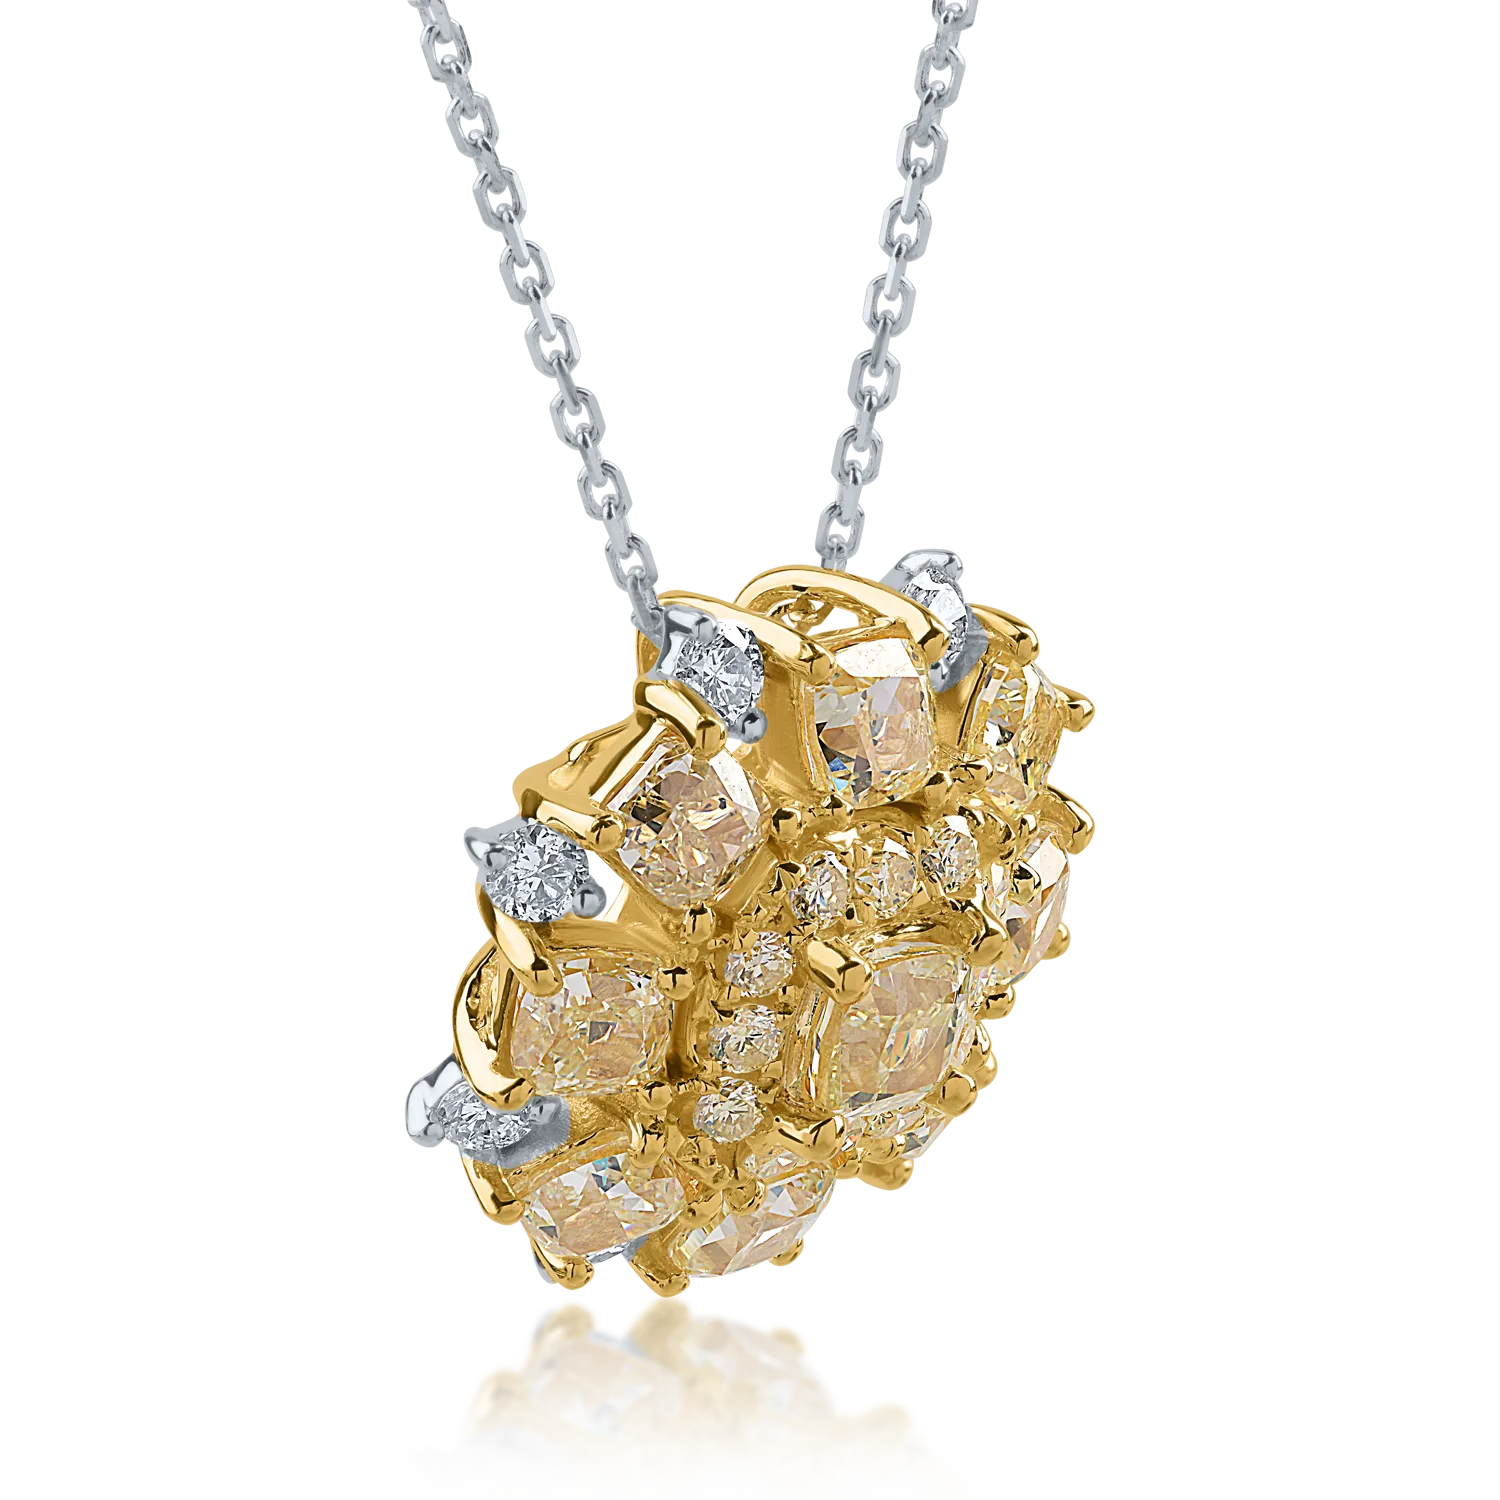 Sárga-fehér arany medál nyaklánc 2.7ct sárga gyémántokkal és 0.38ct tiszta gyémántokkal